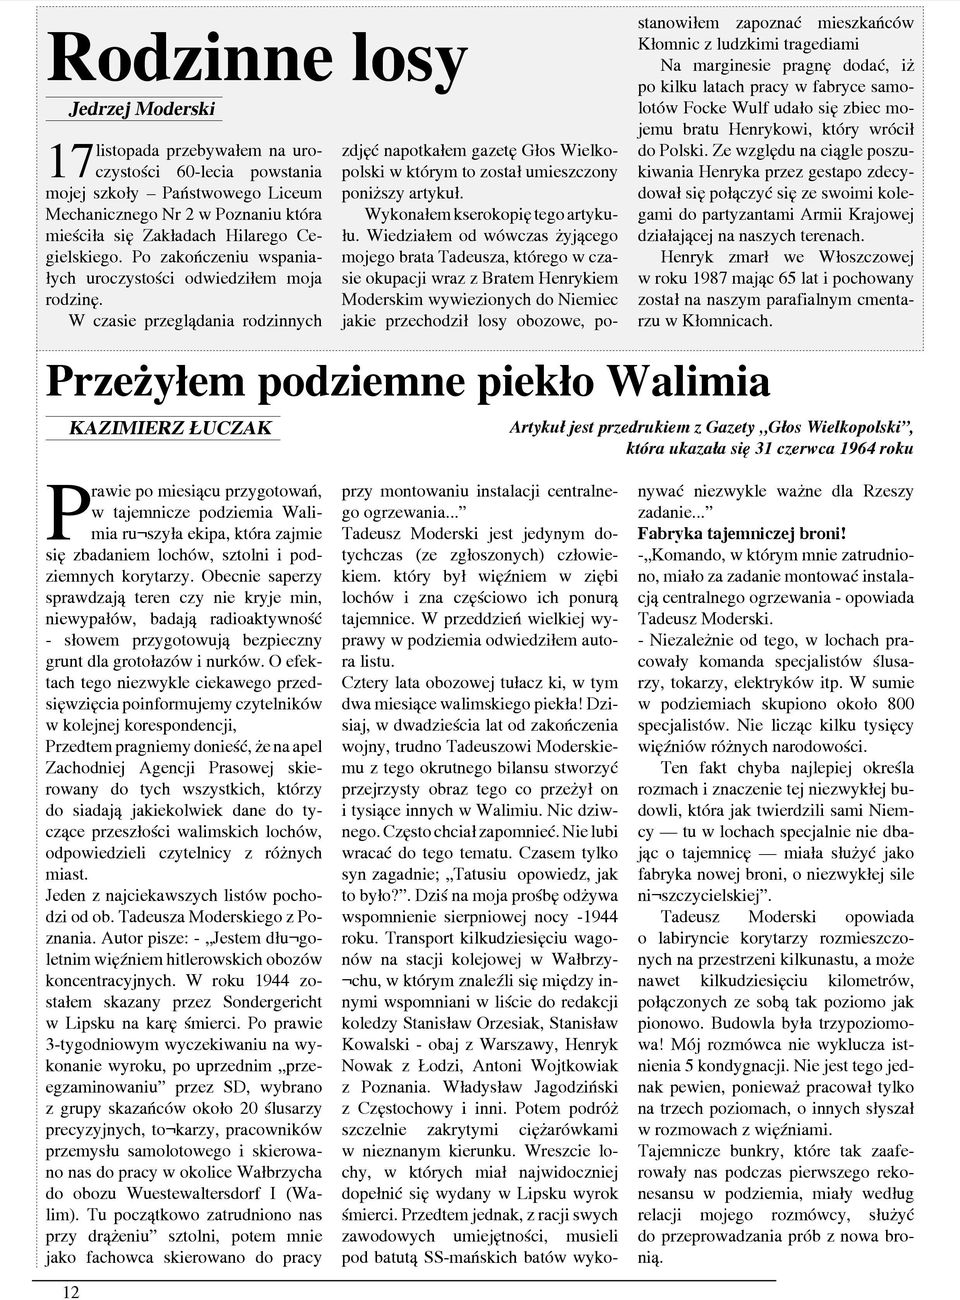 W czasie przeglądania rodzinnych zdjęć napotkałem gazetę Głos Wielkopolski w którym to został umieszczony poniższy artykuł. Wykonałem kserokopię tego artykułu.